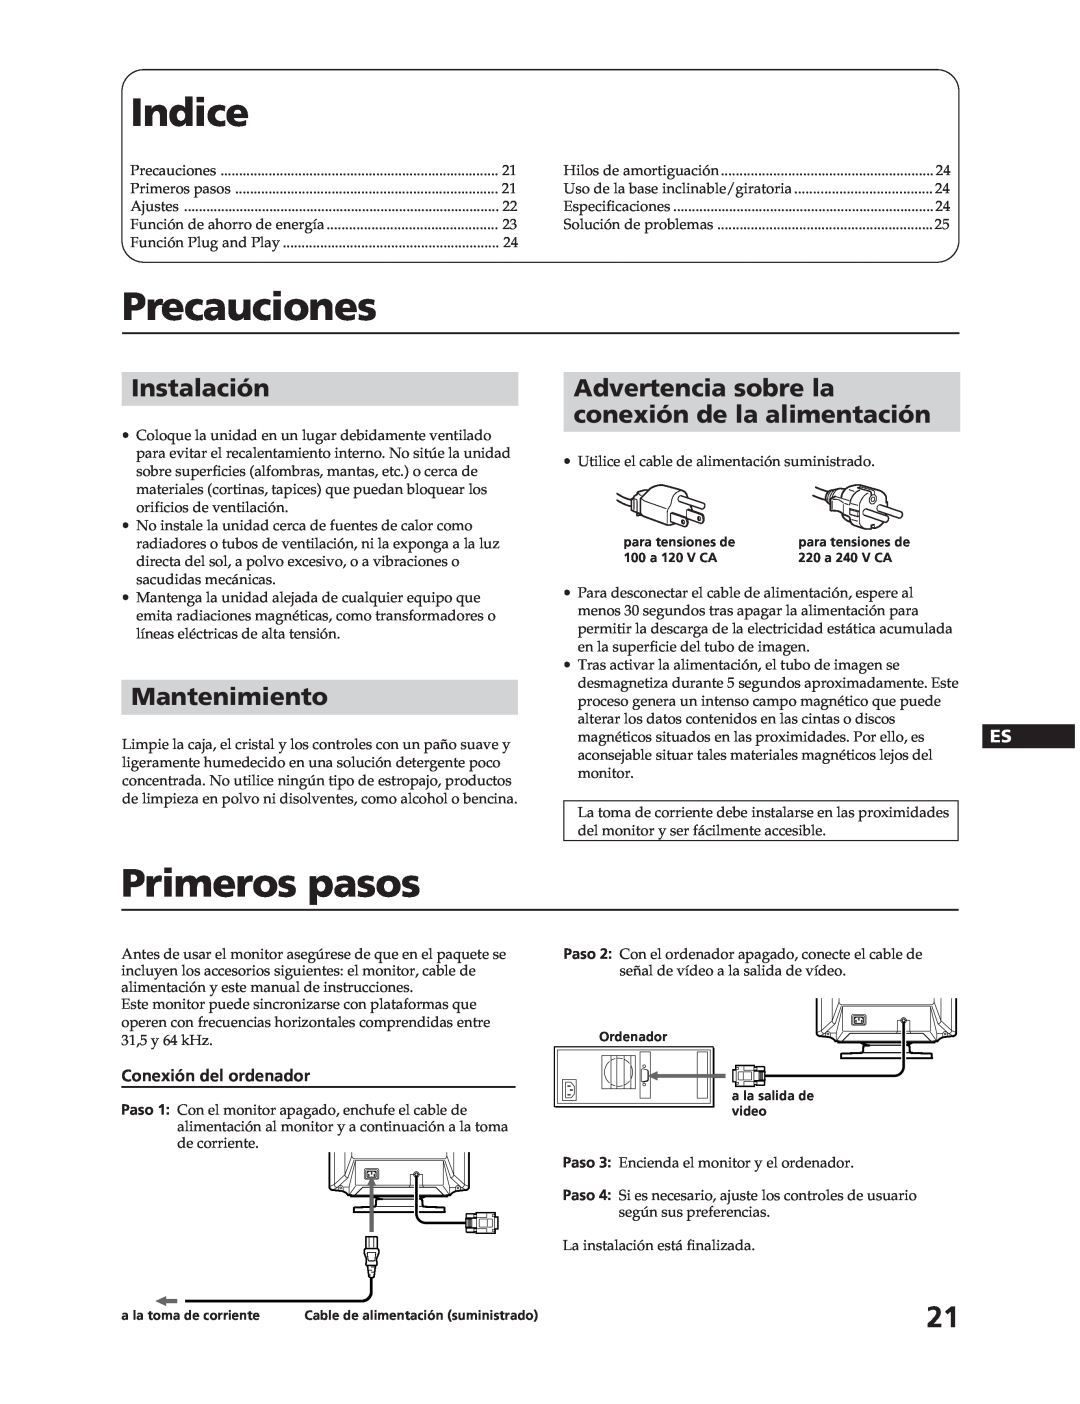 Sony CPD-17F03 manual Indice, Precauciones, Primeros pasos, Instalación, Mantenimiento, Conexión del ordenador 